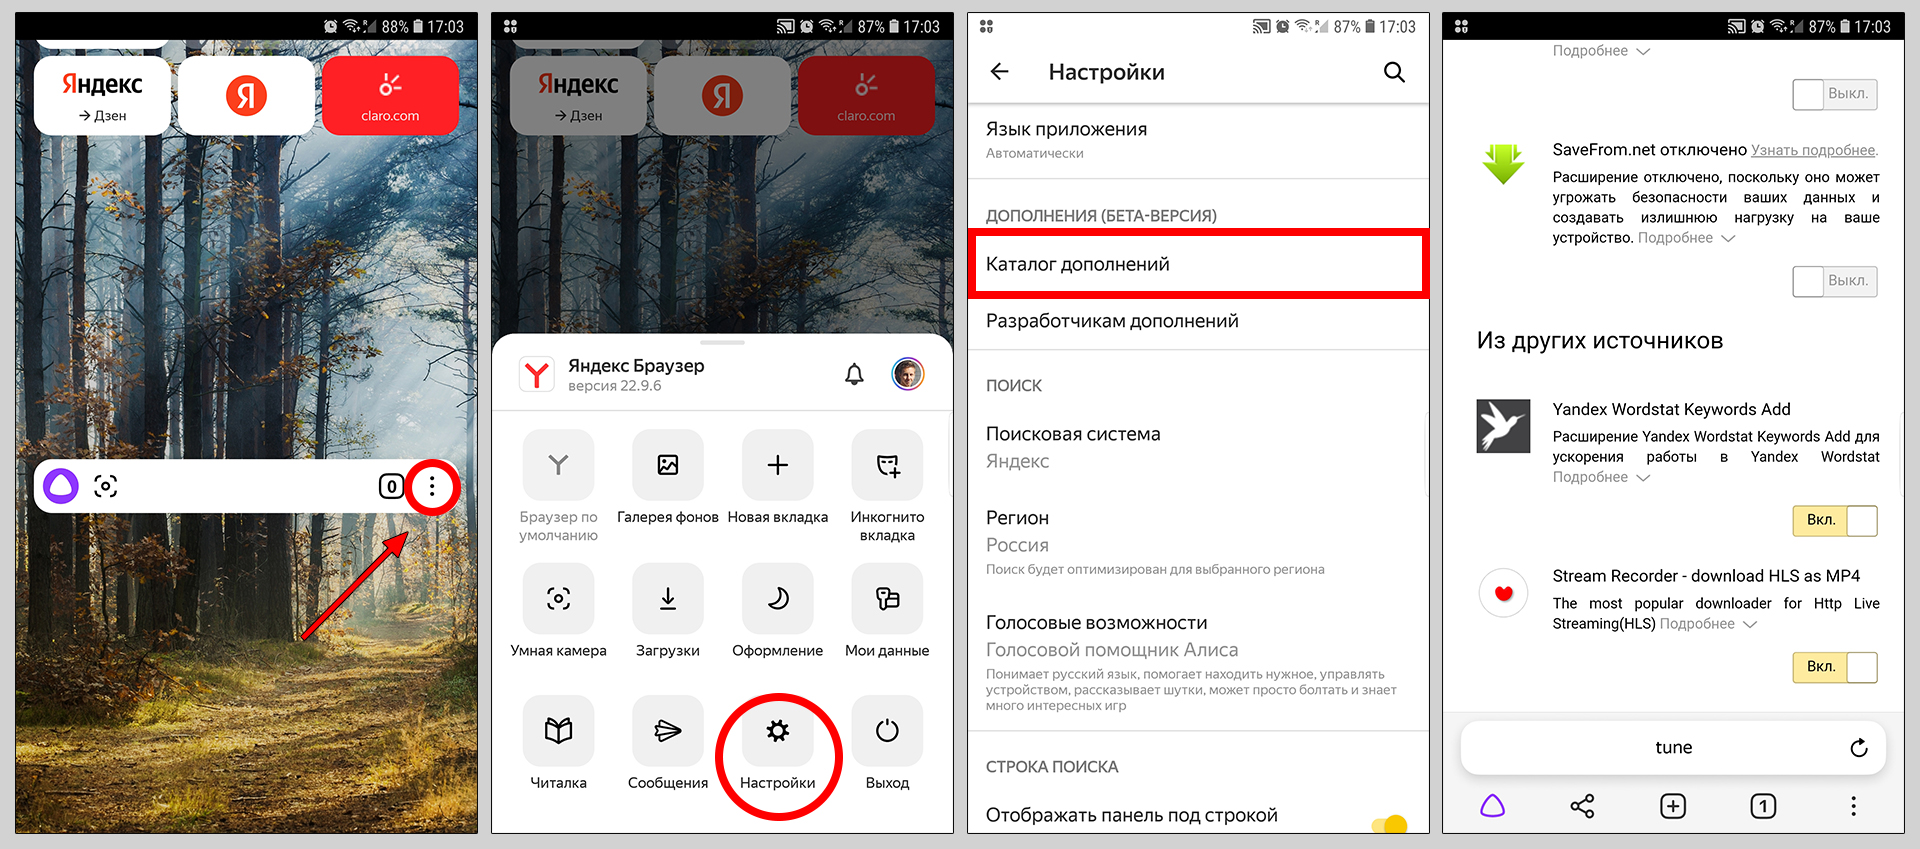 Как посмотреть список расширений в мобильной версии Яндекс браузера на Android и iPhone.